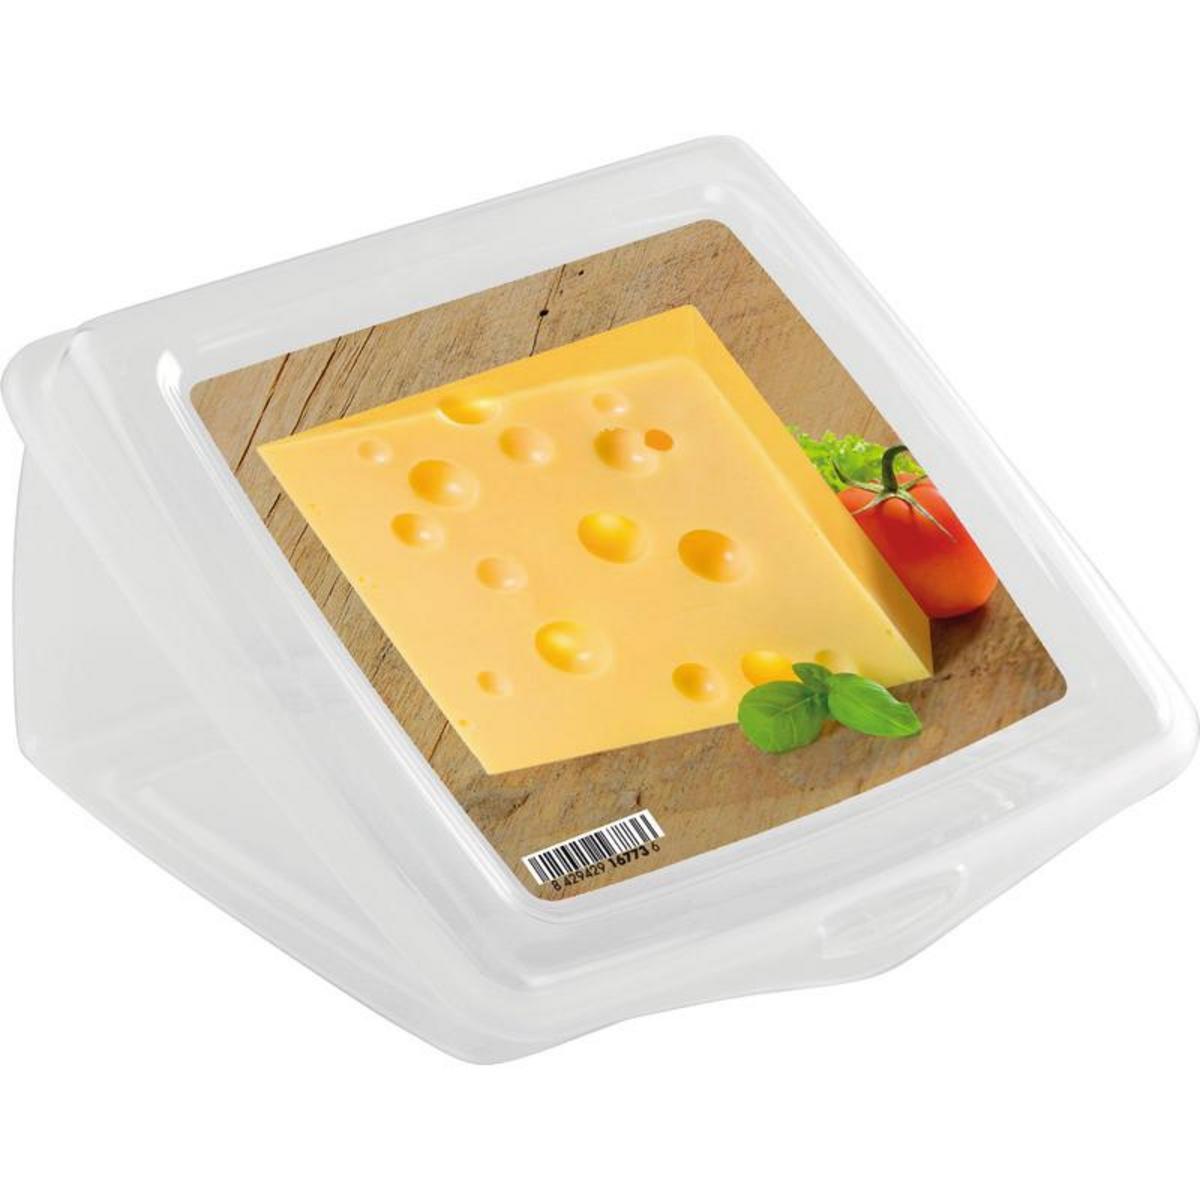 Boite à fromage triangulaire - Polypropylène - 2,5 L - 13,5 x 12,5 x 8 cm - Multicolore